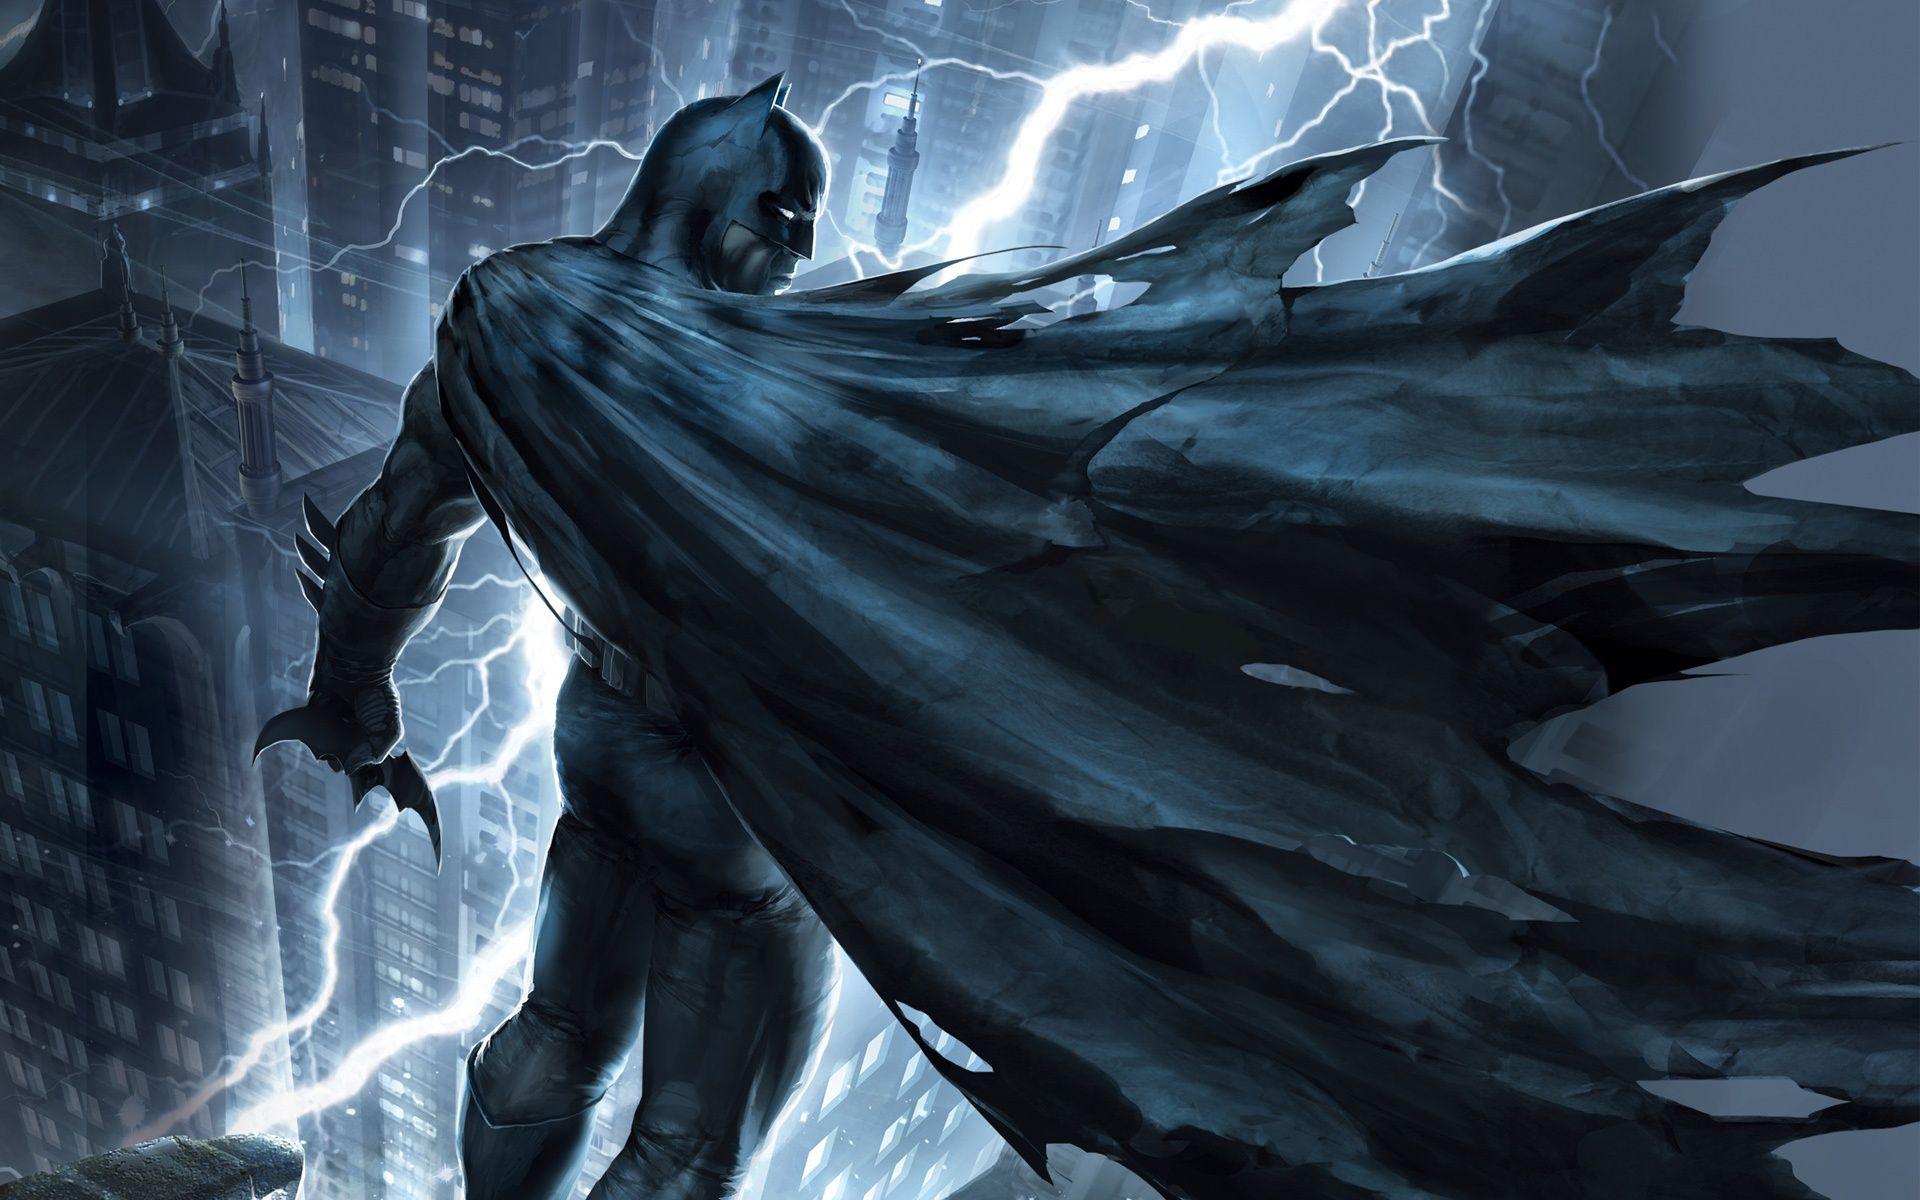 Batman The Dark Knight Returns Part 1 Movie Wallpaper in jpg format